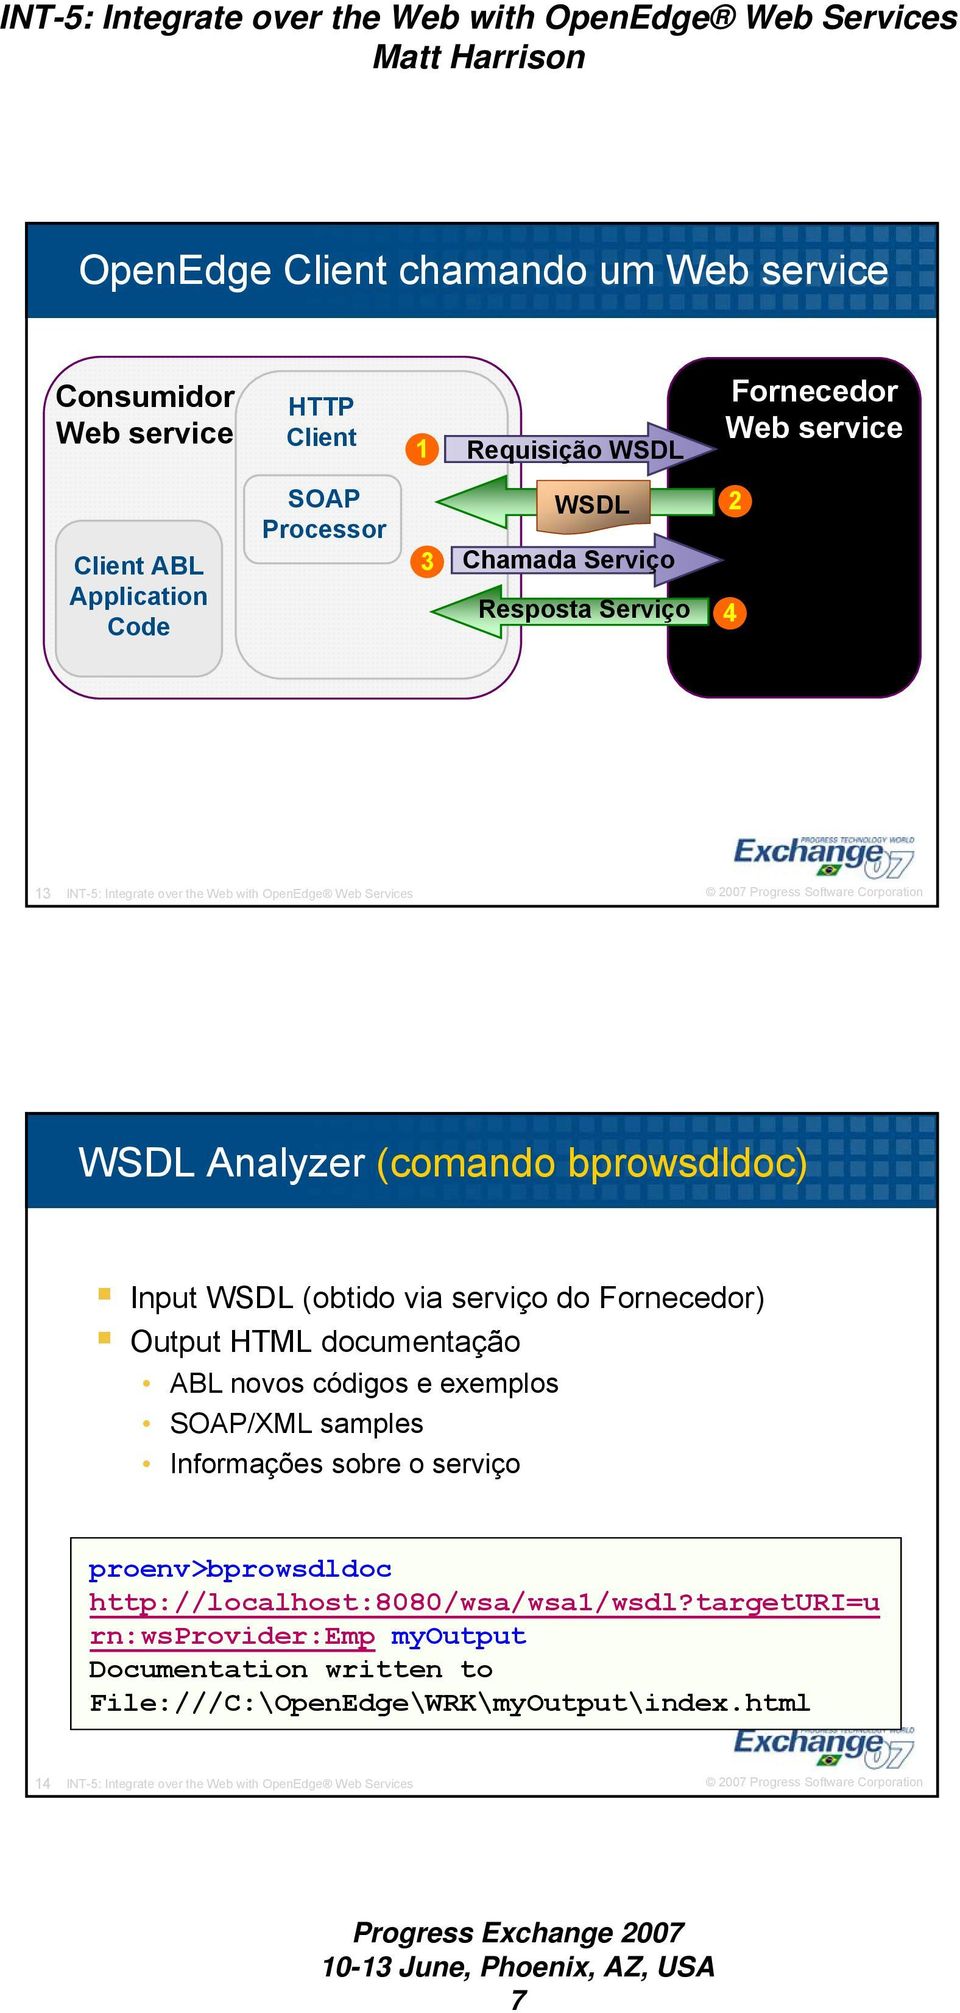 Fornecedor) Output HTML documentação ABL novos códigos e exemplos SOAP/XML samples Informações sobre o serviço proenv>bprowsdldoc http://localhost:8080/wsa/wsa1/wsdl?